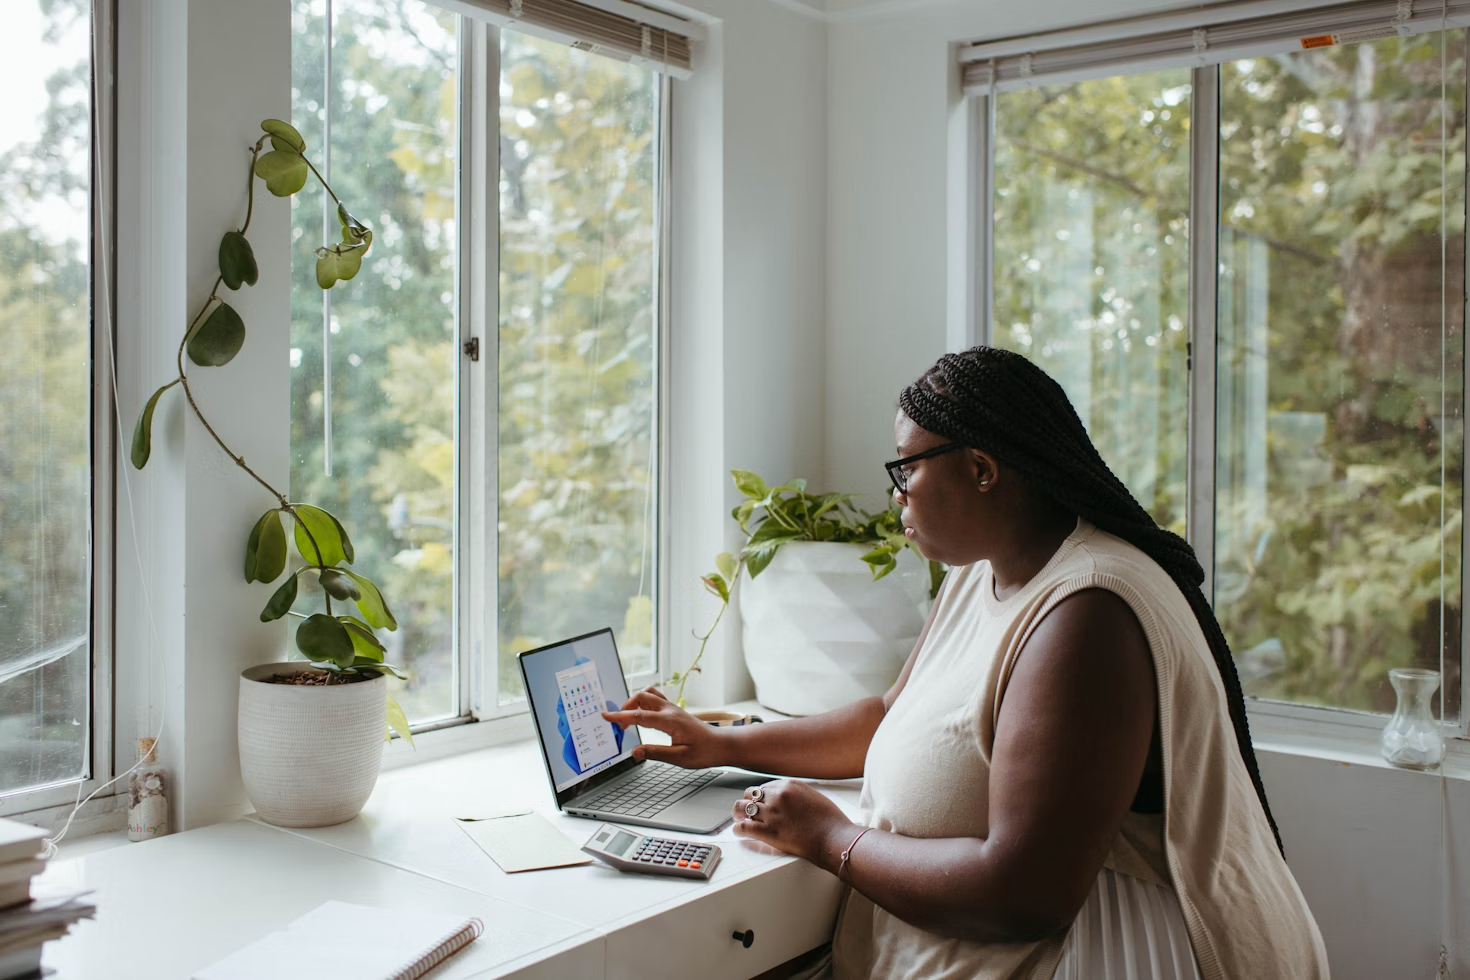 Femme avec des lunettes de vue noires travaillant sur son ordinateur portable posé sur un bureau blanc face à une fenêtre